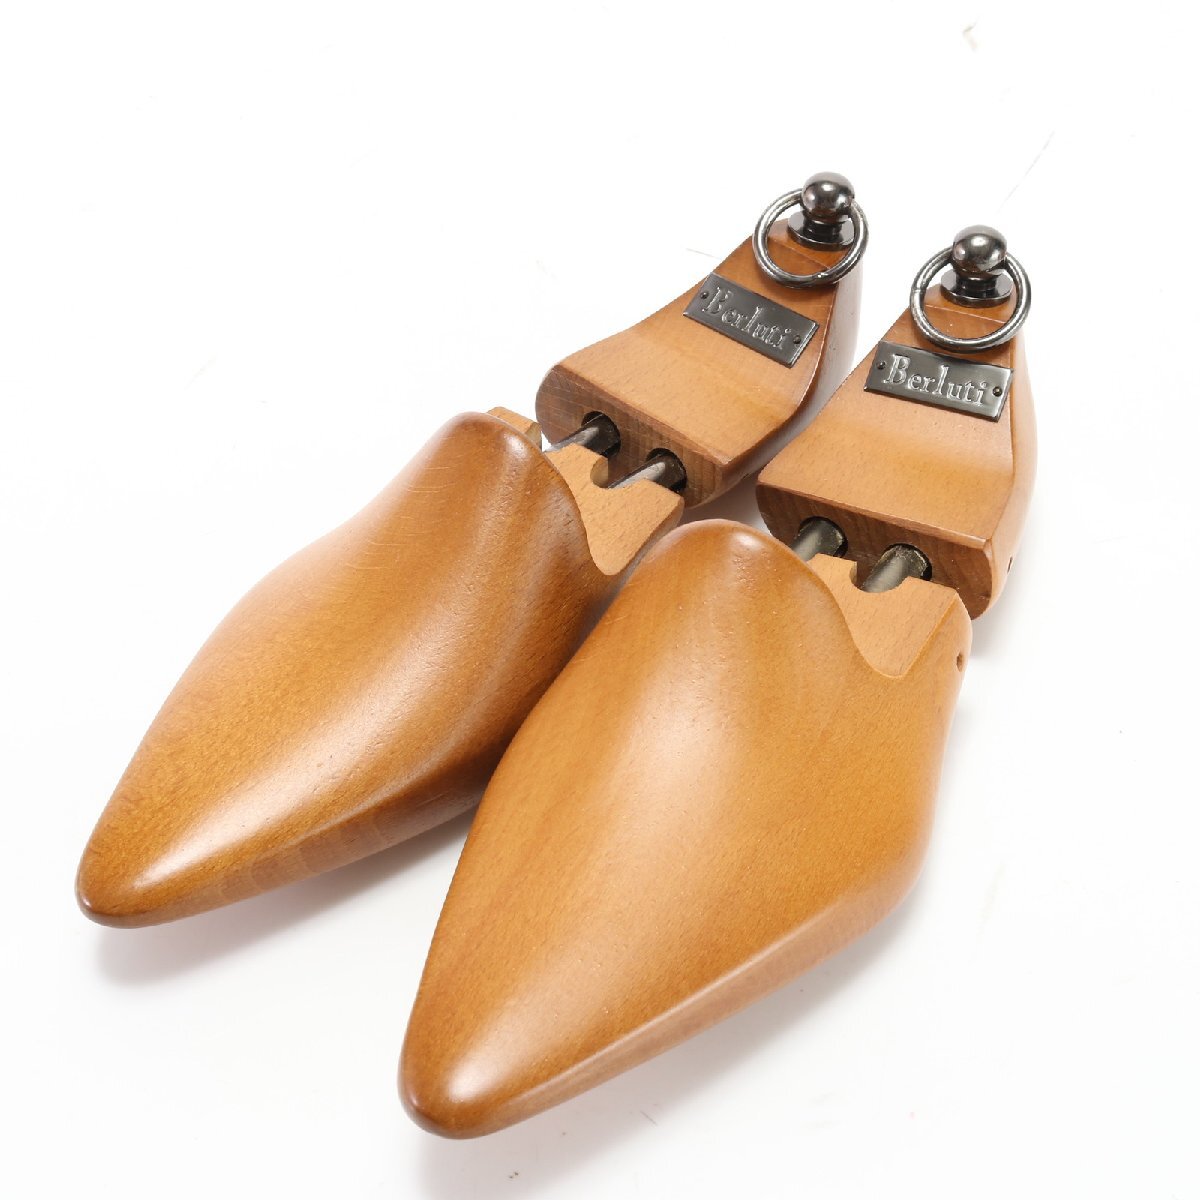 # превосходный товар # Berluti # колодка tree обувные колодки из дерева Brown 5 кожа обувь обувь уход сопутствующие товары мужской бизнес EHM 1205-H108